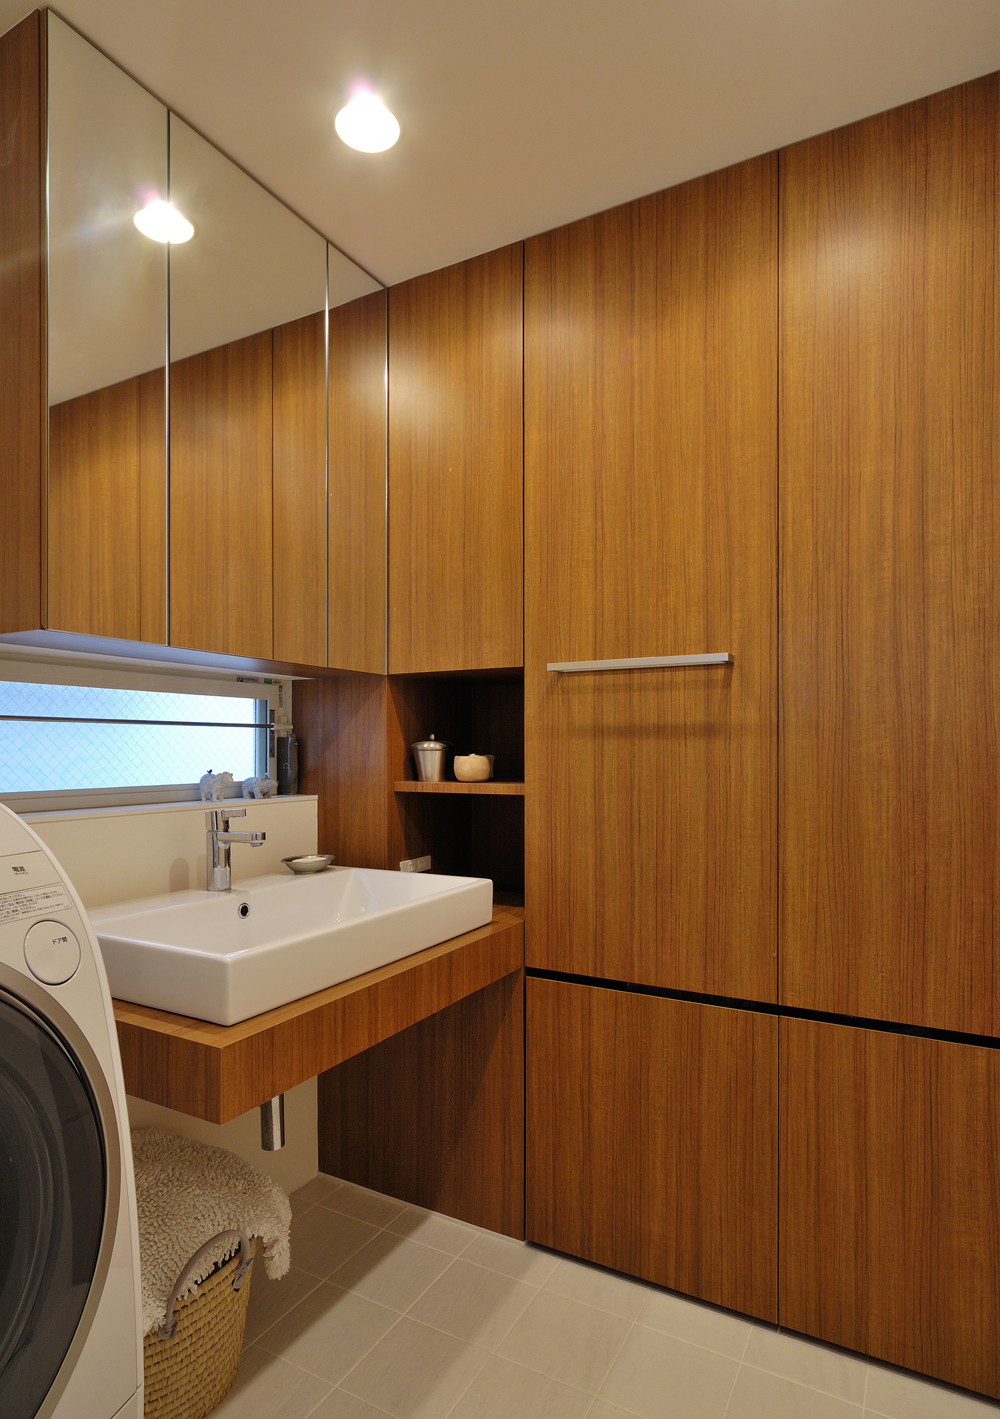 壁一面を洗面カウンターと同素材の木目収納とし、デザイン力と収納力を兼ね添えた洗面所